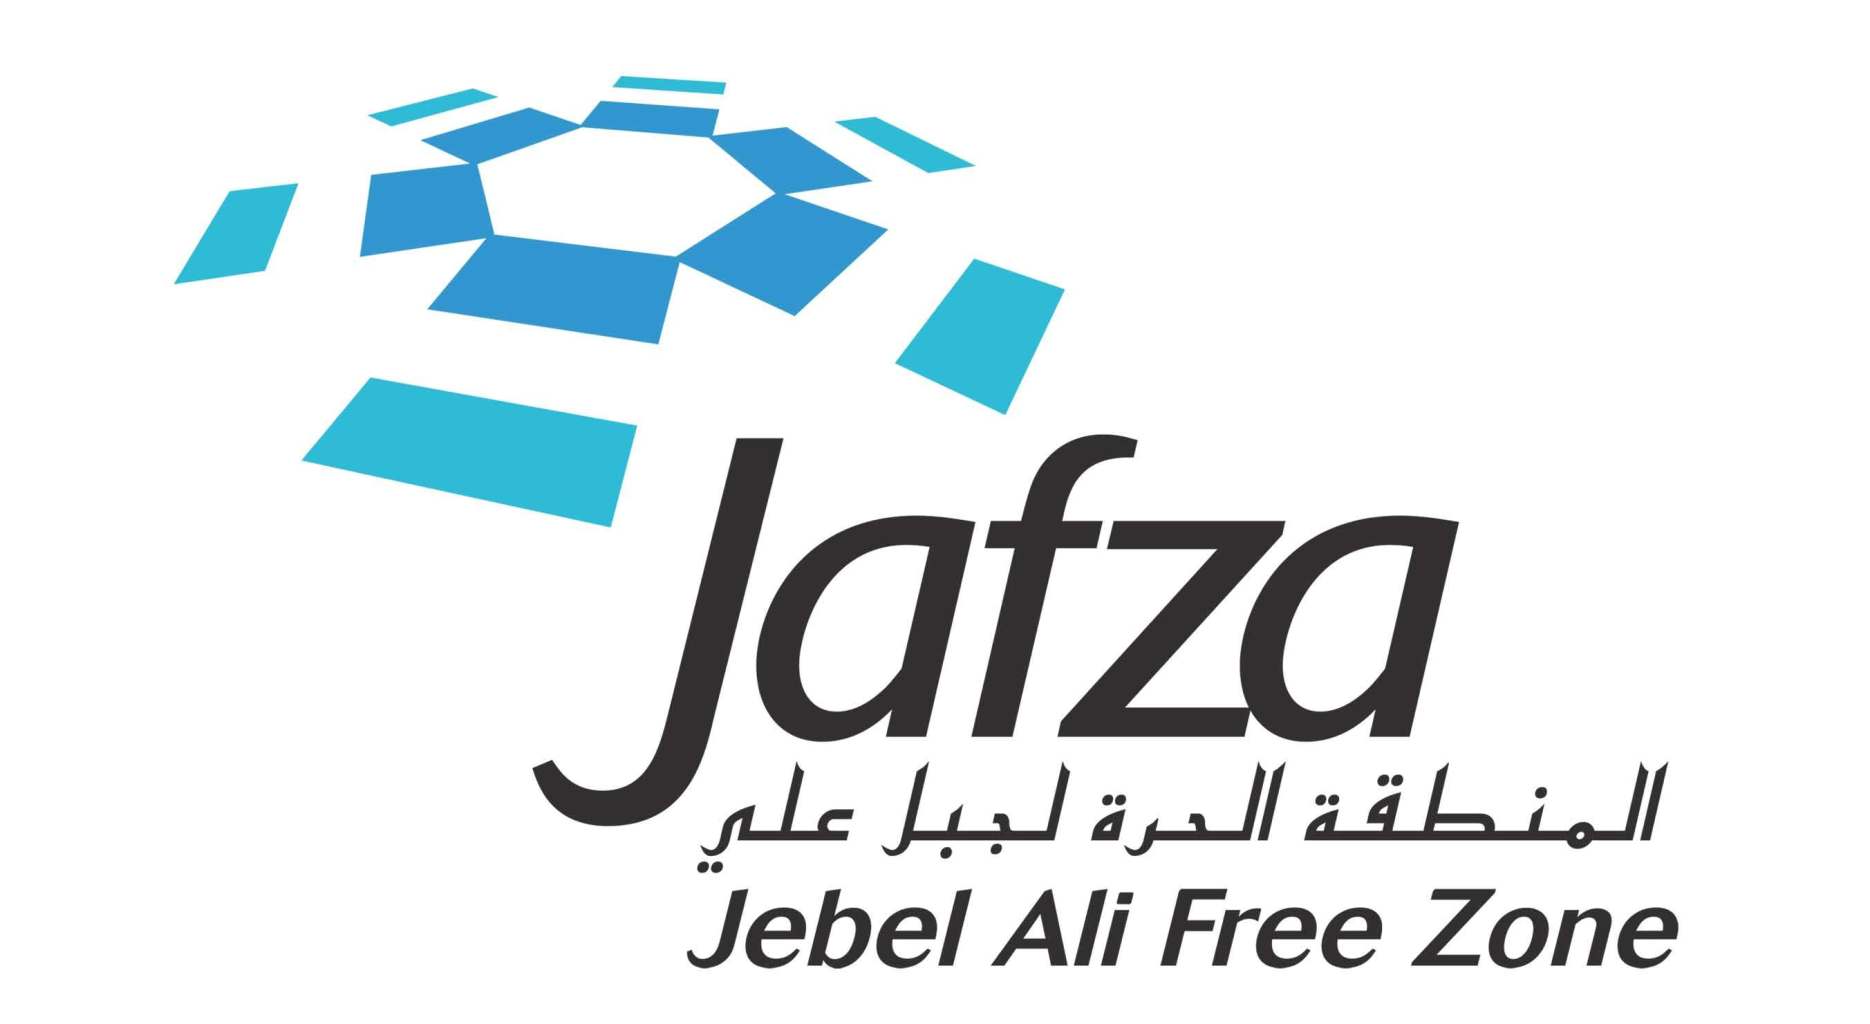 
Jafza намерена организовать рекламные туры в Россию, Египет и Южную Корею